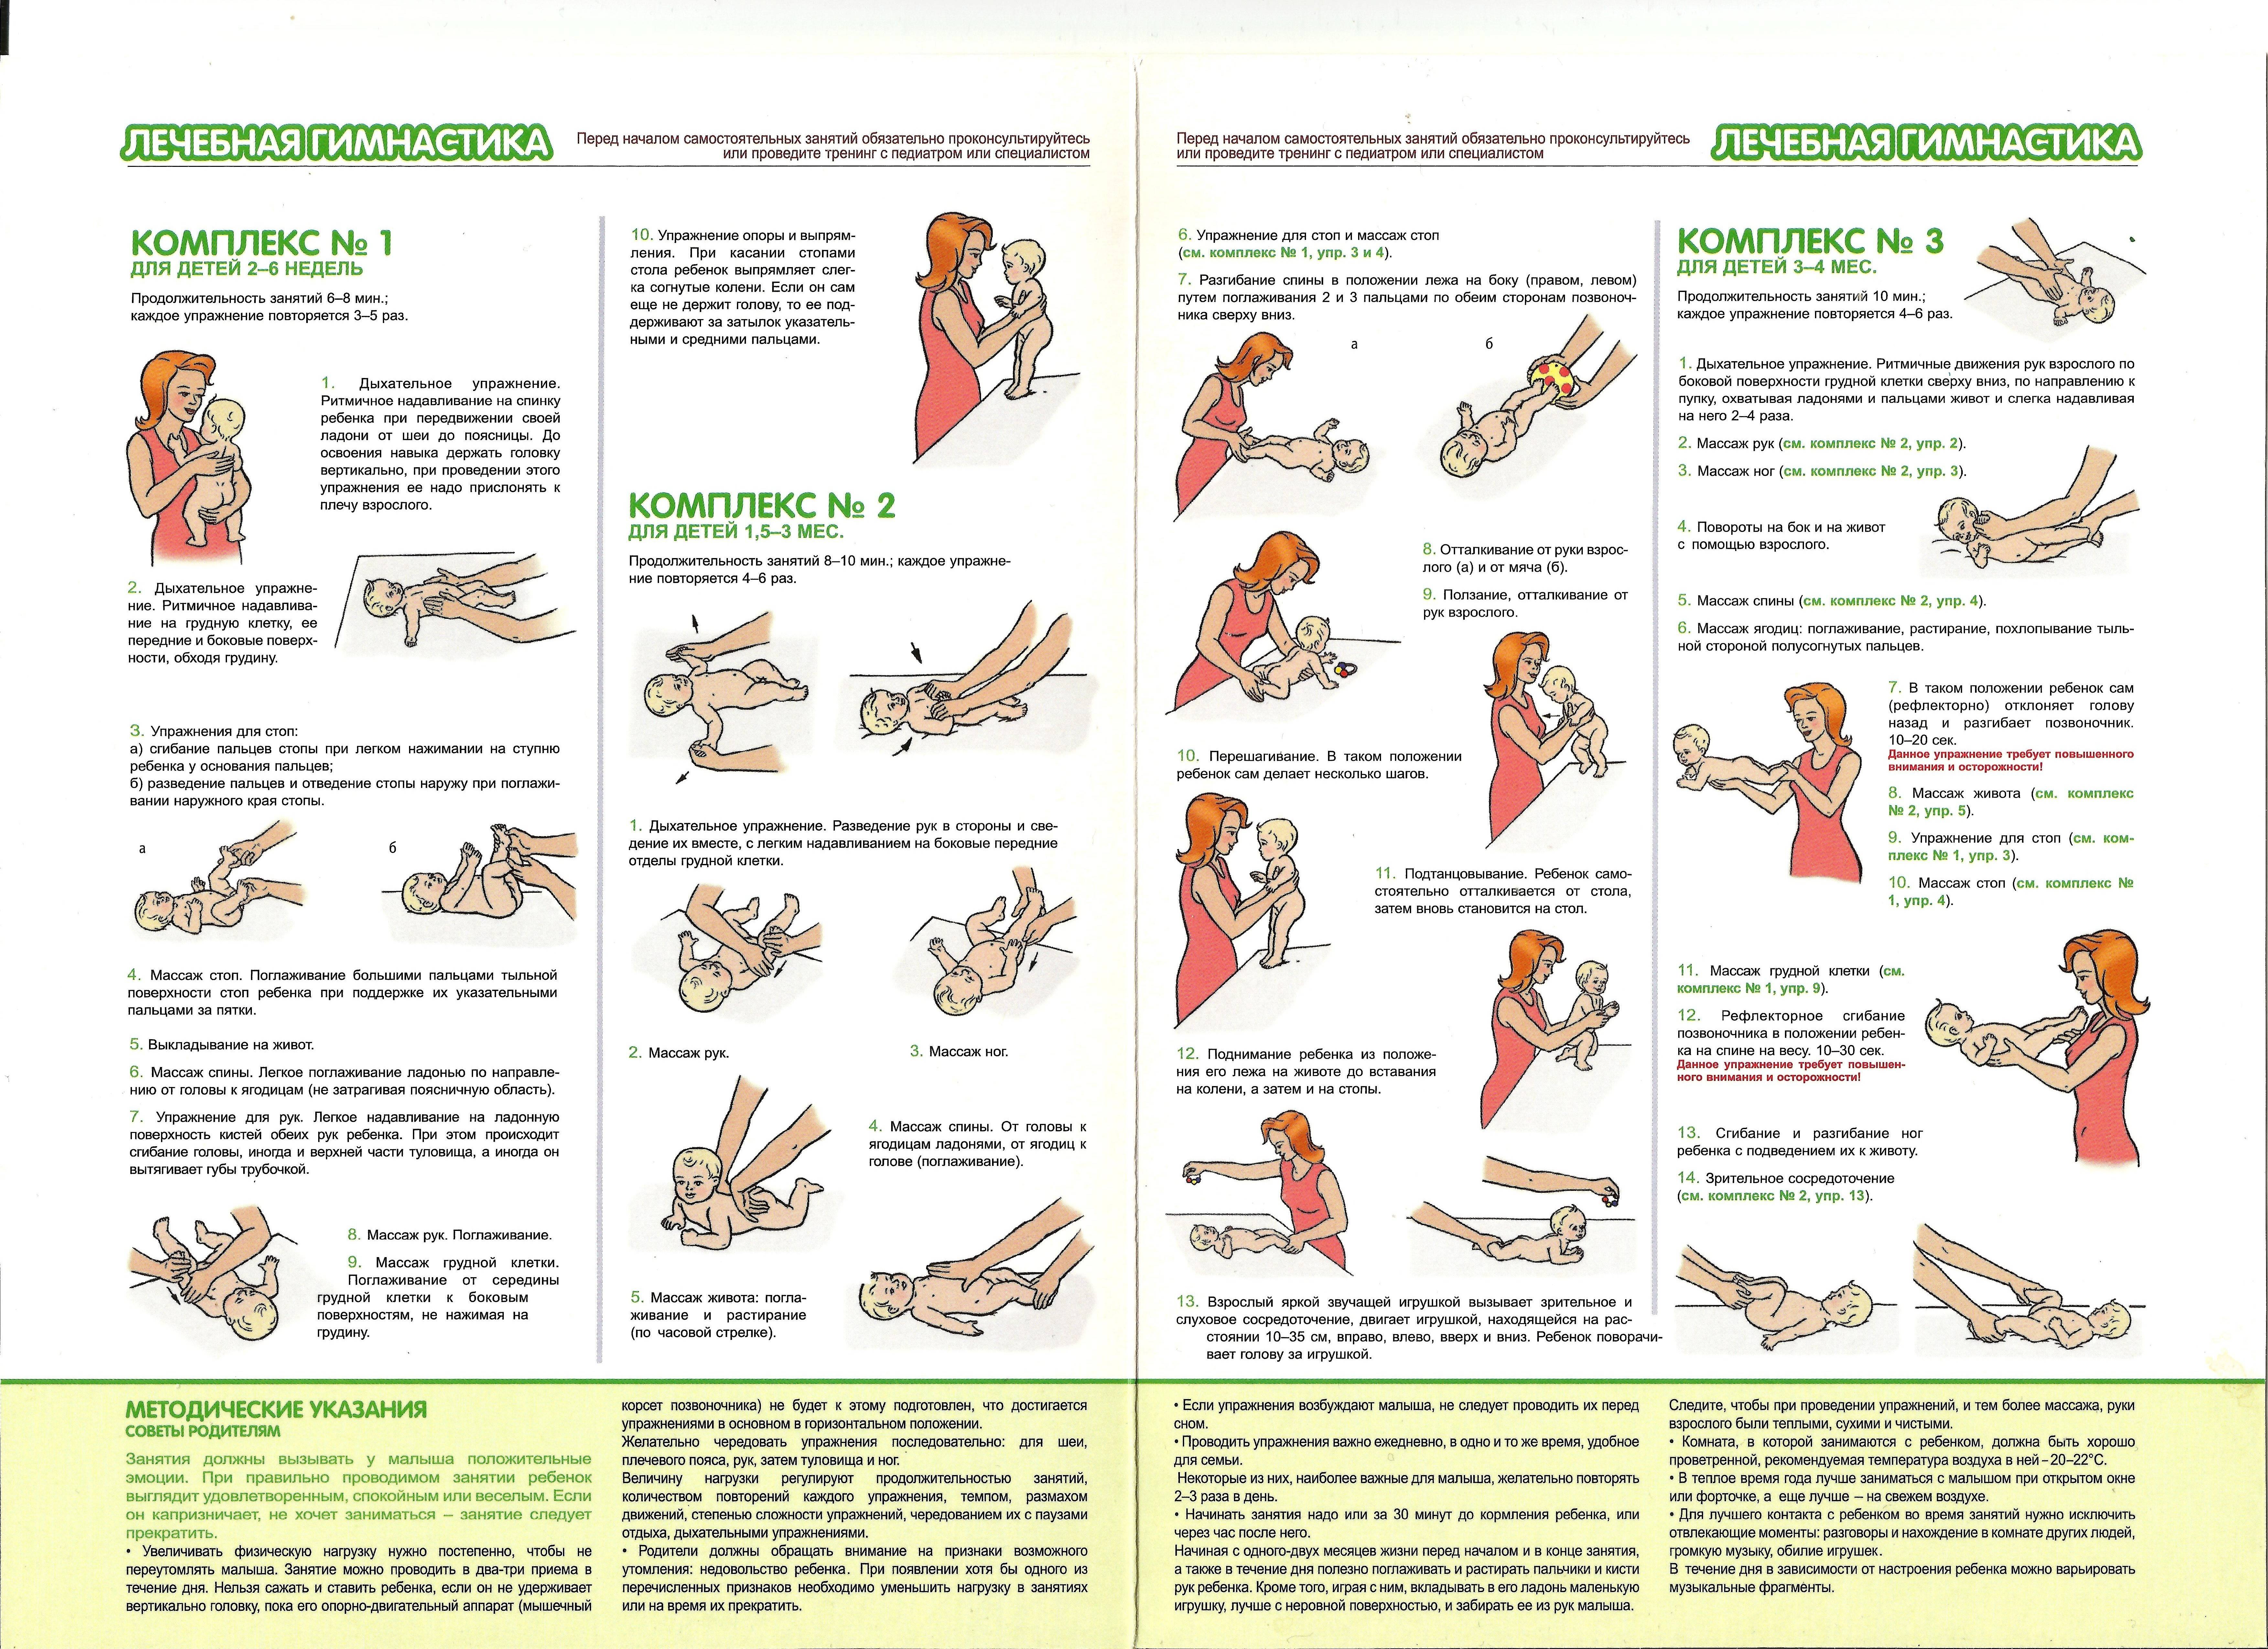 Гимнастика для 5-месячного ребенка: правила проведения упражнений